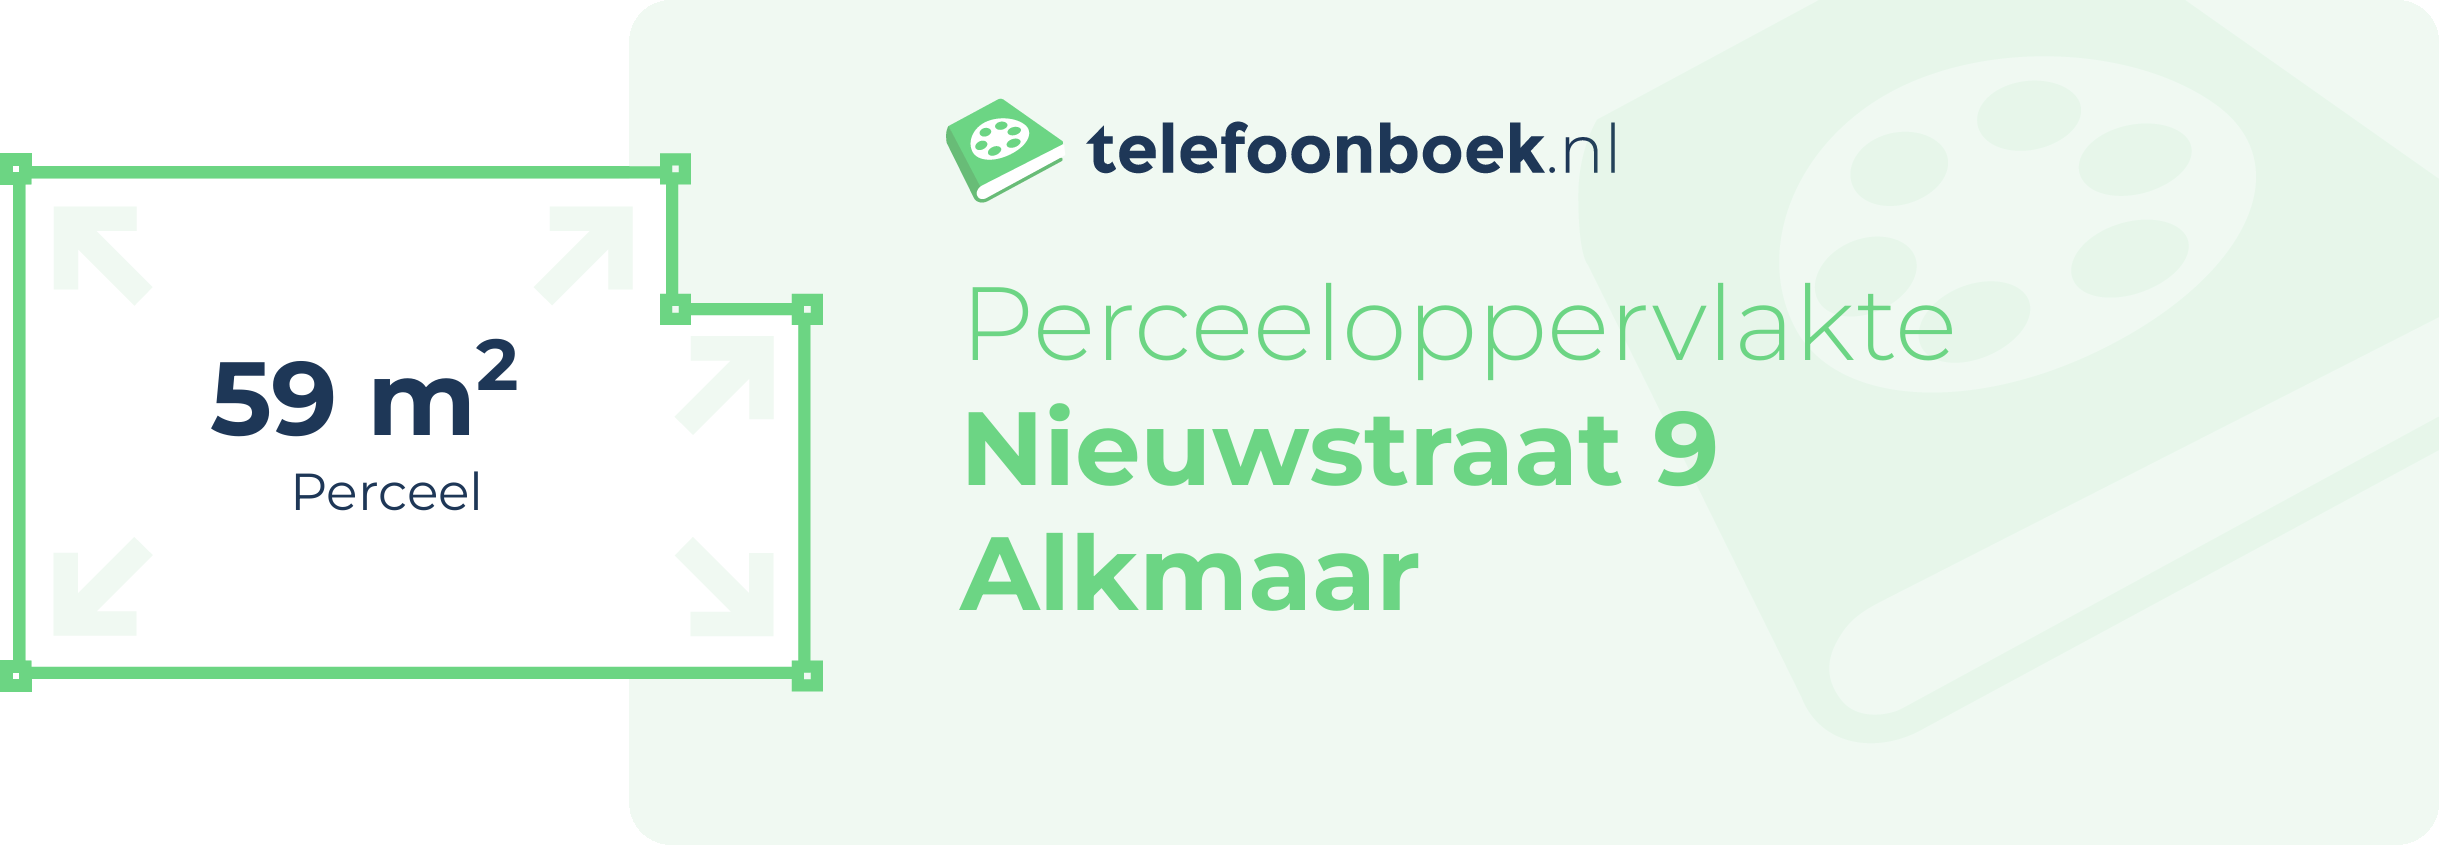 Perceeloppervlakte Nieuwstraat 9 Alkmaar